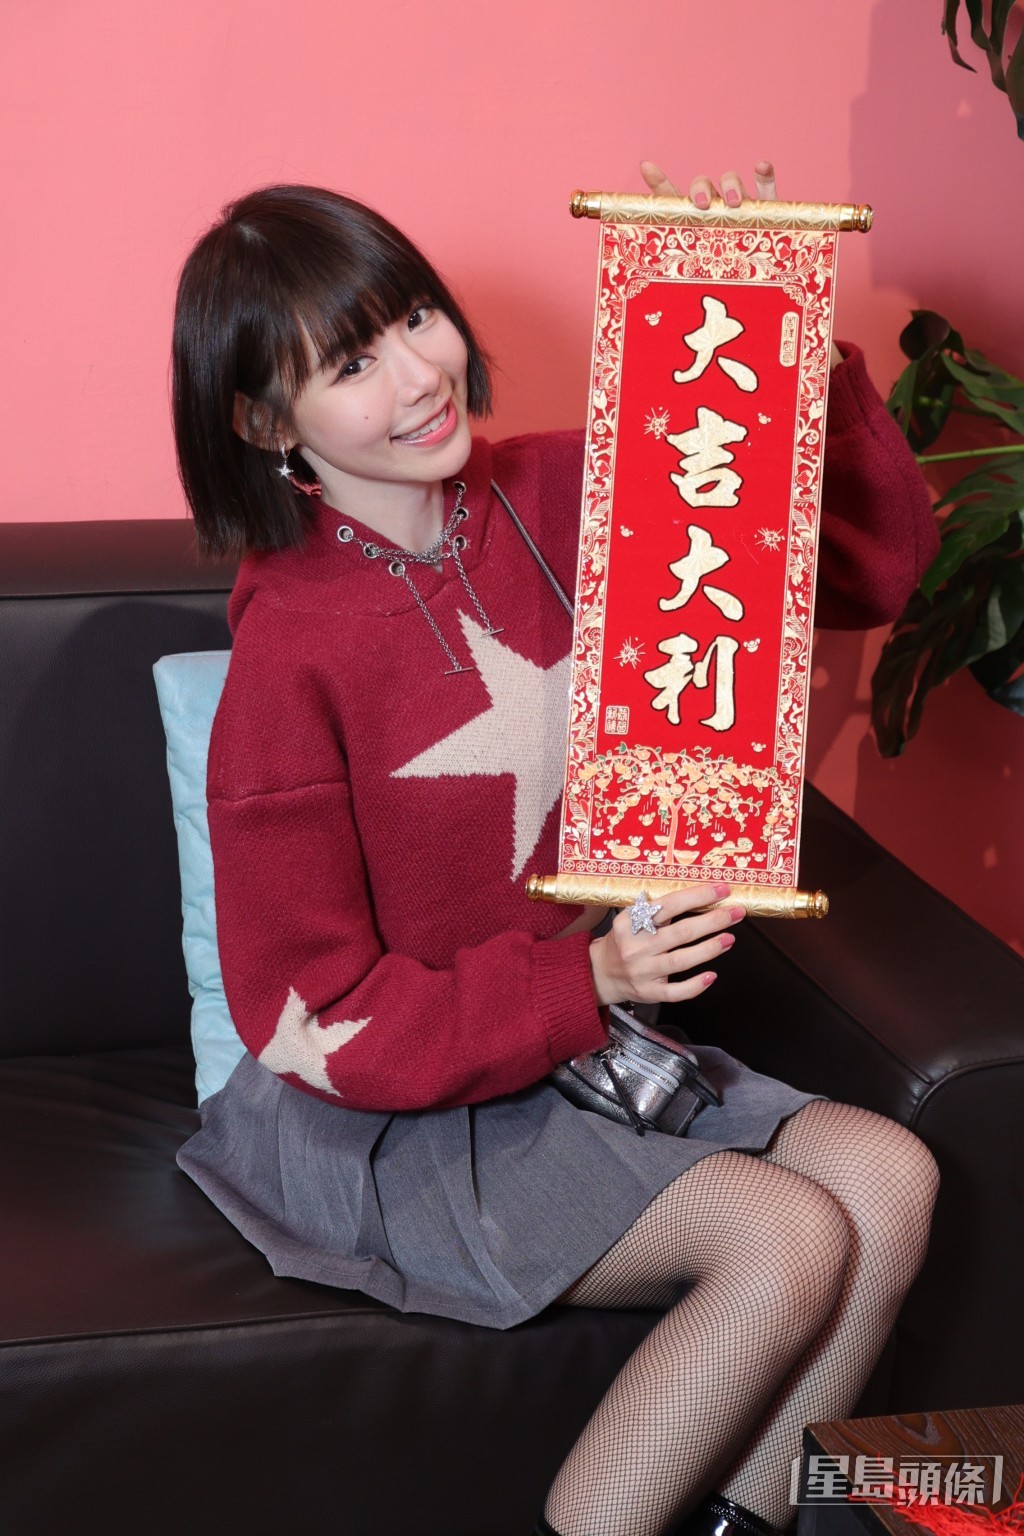 林明禎是原班人馬再參演《飯戲攻心2》，她表示兩集有很大分別。